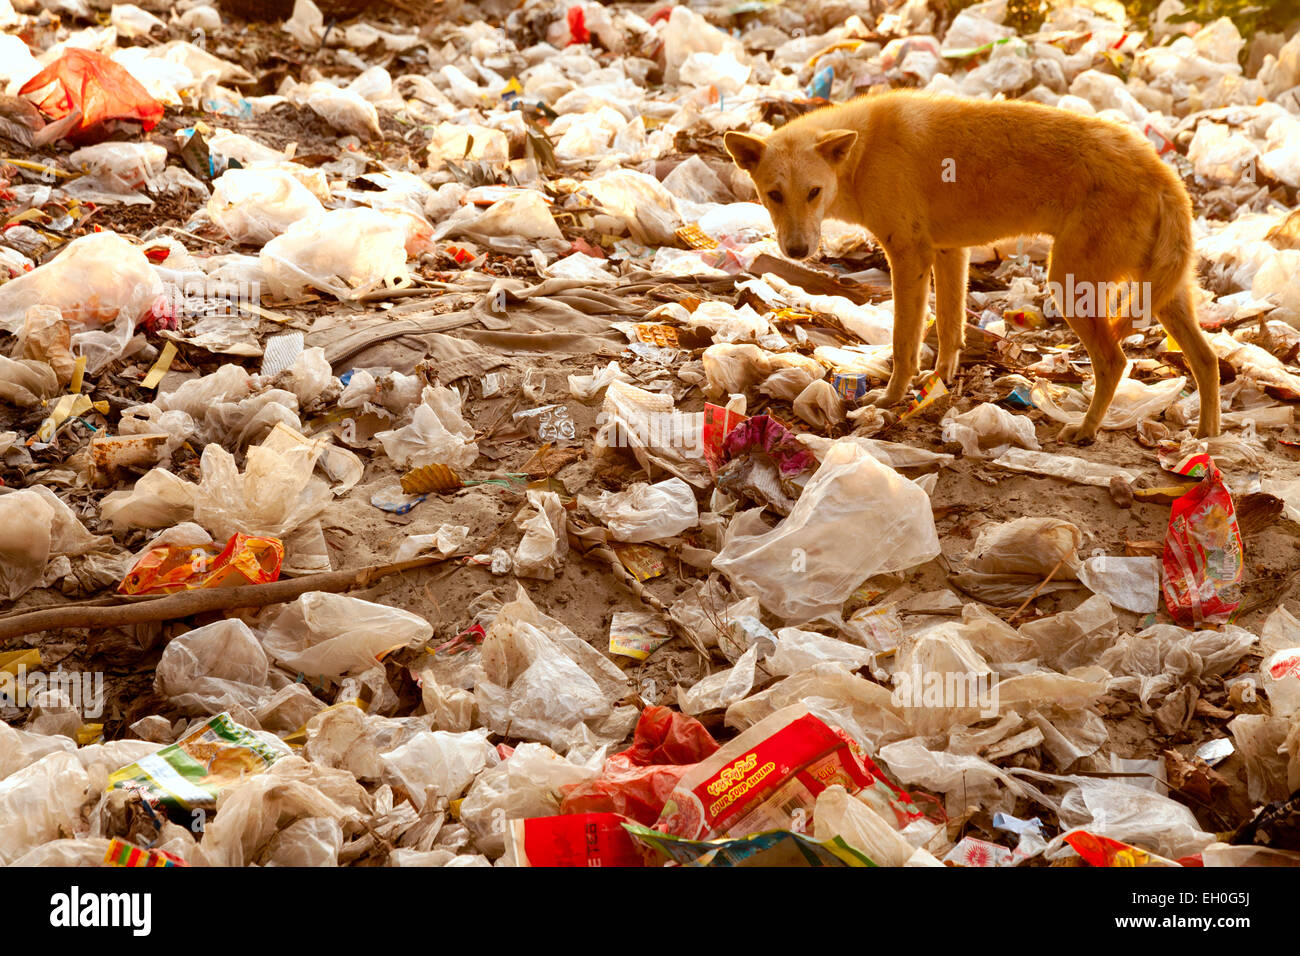 Asia Contaminación - un perro que se está forrajando en un montón de basura - ejemplo de contaminación grave; Mandalay, Myanmar ( Birmania ), Asia Foto de stock